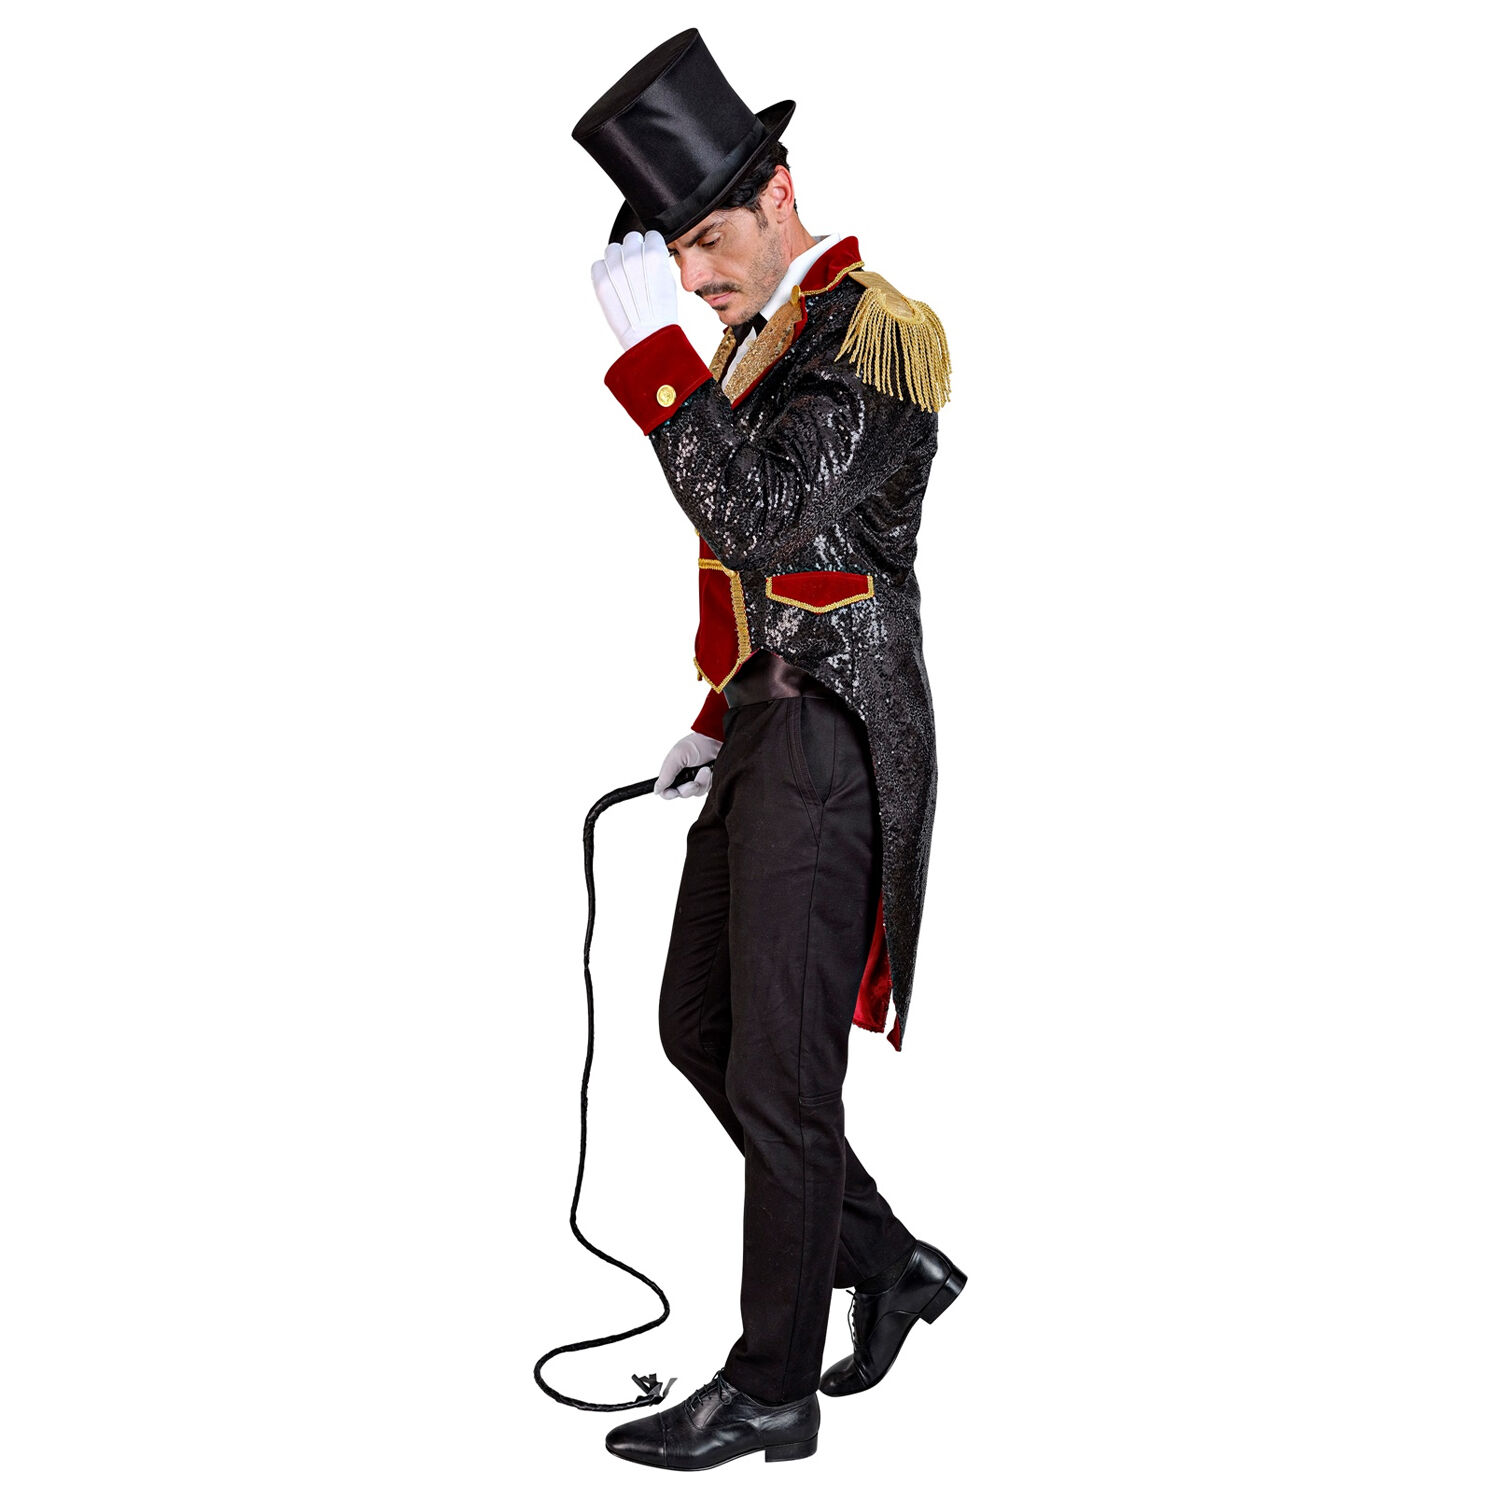 NEU Herren-Kostüm Zirkus-Direktor, Frack mit Pailletten, schwarz-dunkelrot, Gr. S Bild 3